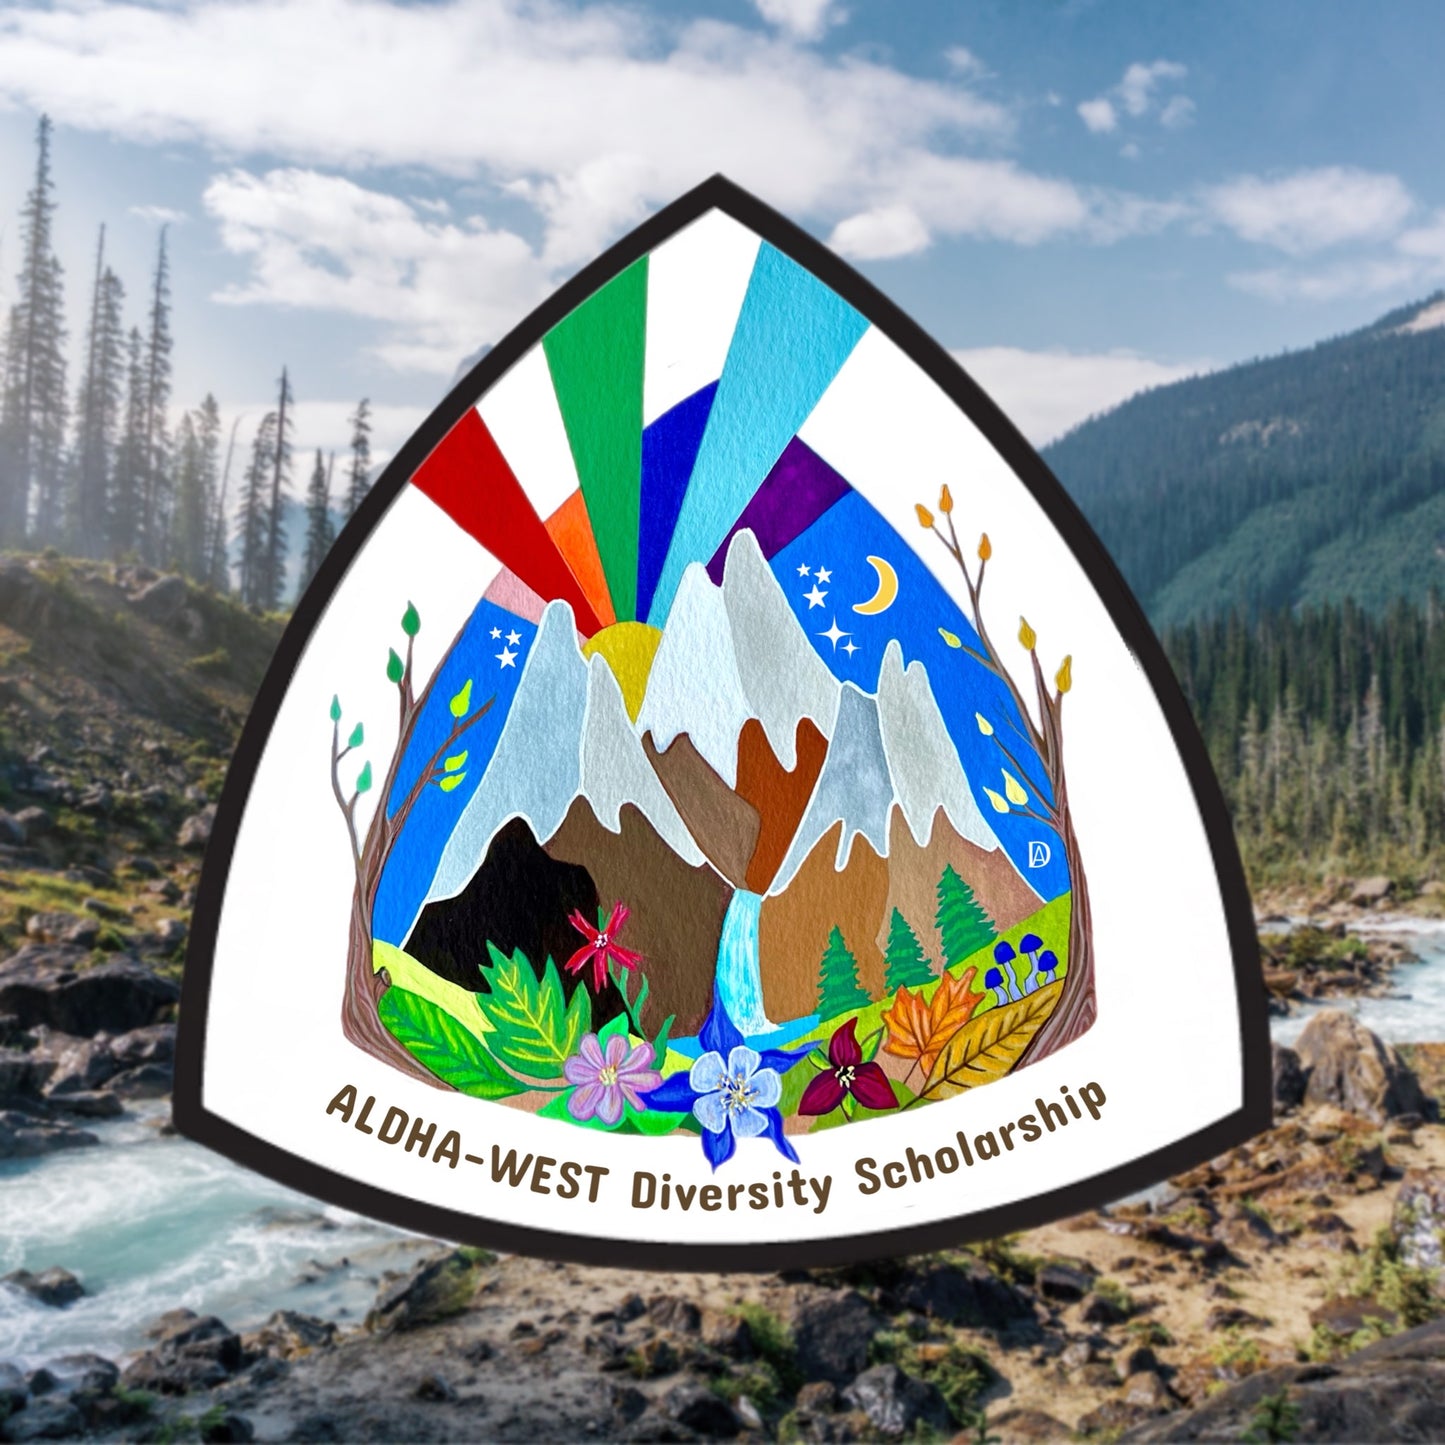 Hiking Sticker: "ALDHA-West Diversity Scholarship"